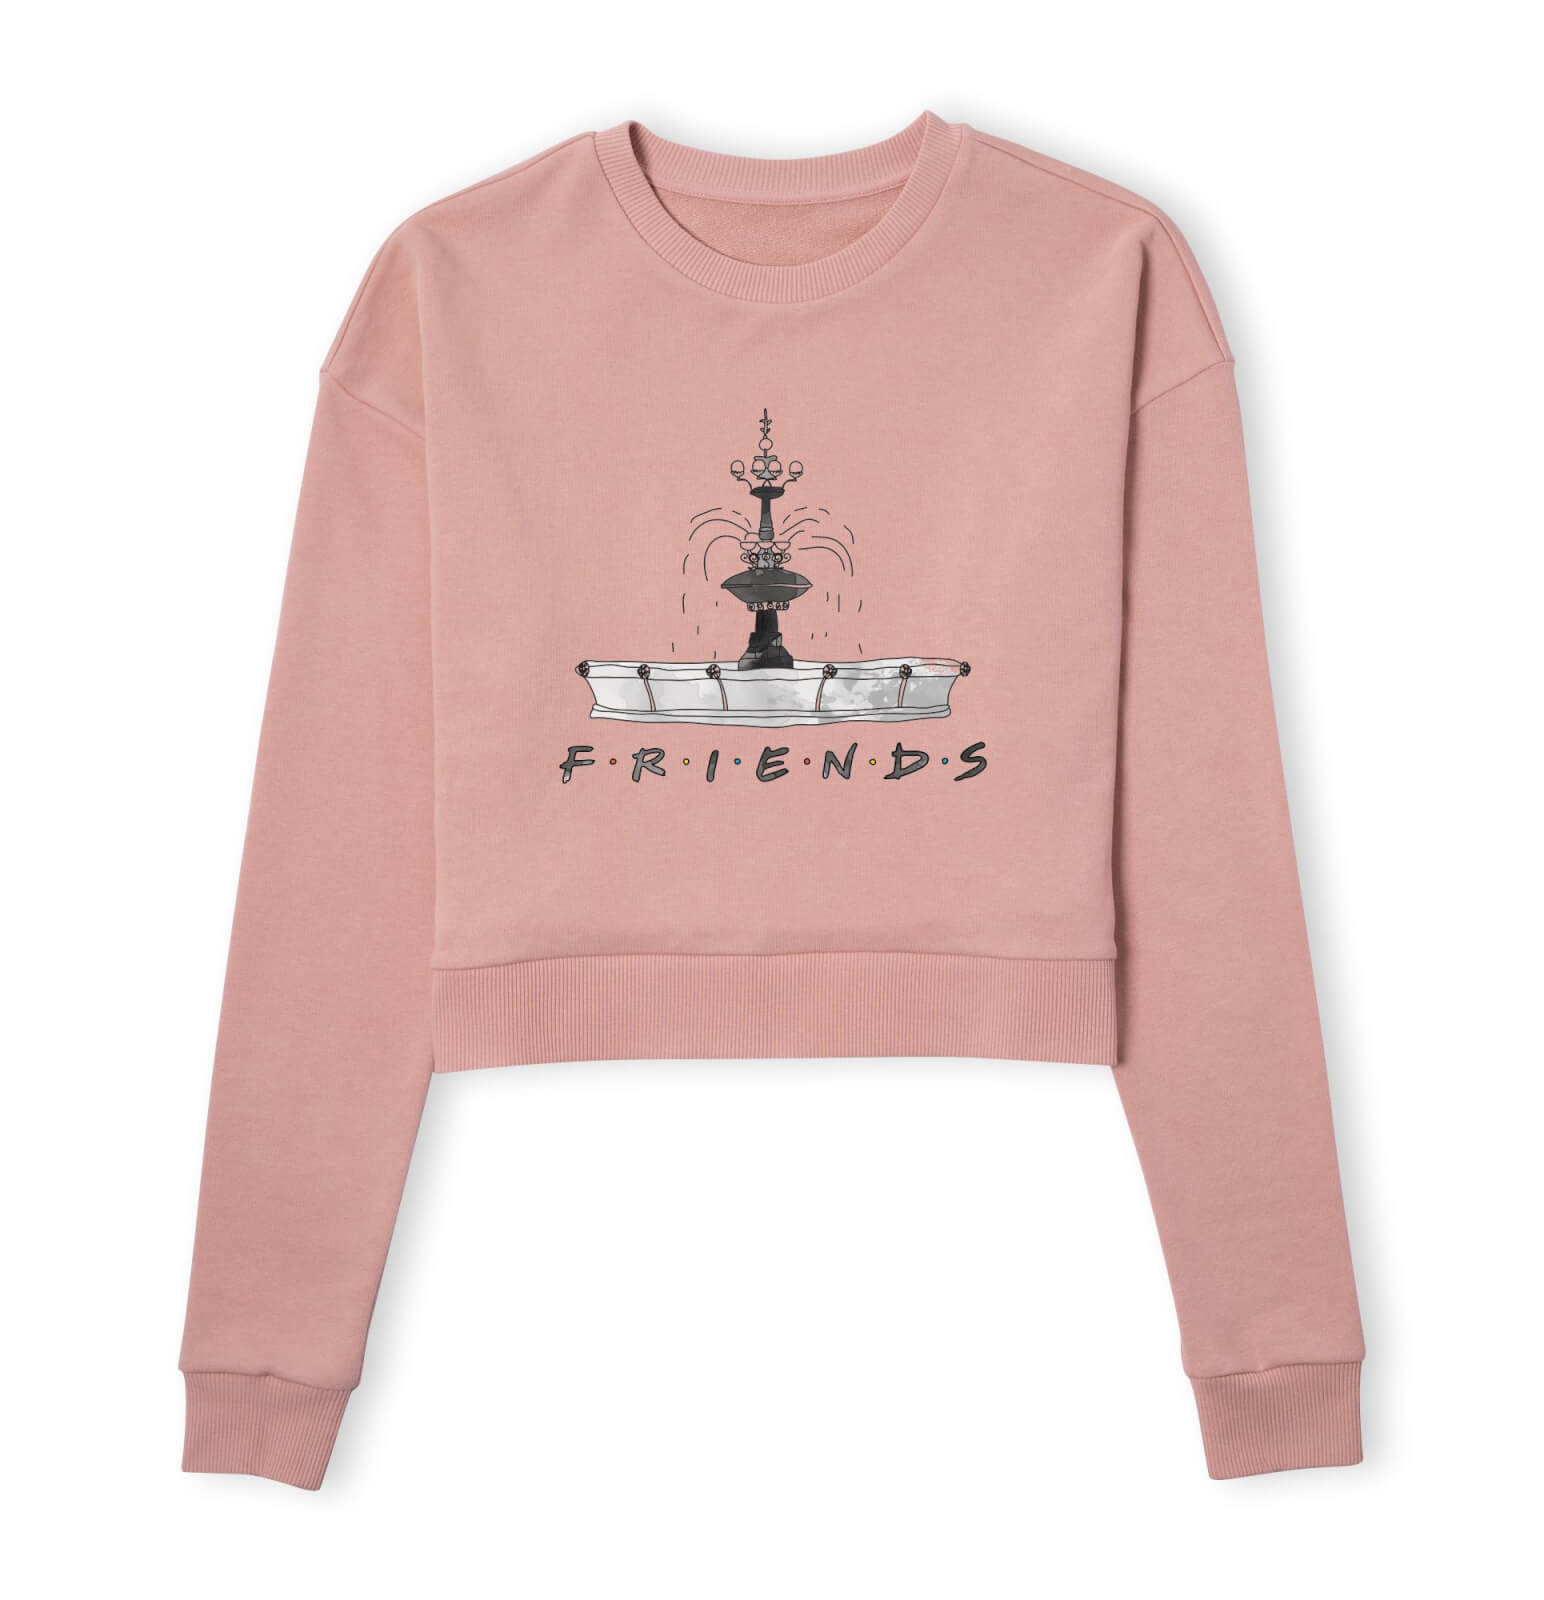 Friends Fountain Sketch Women's Cropped Sweatshirt - Dusty Pink - XS - Dusty pink